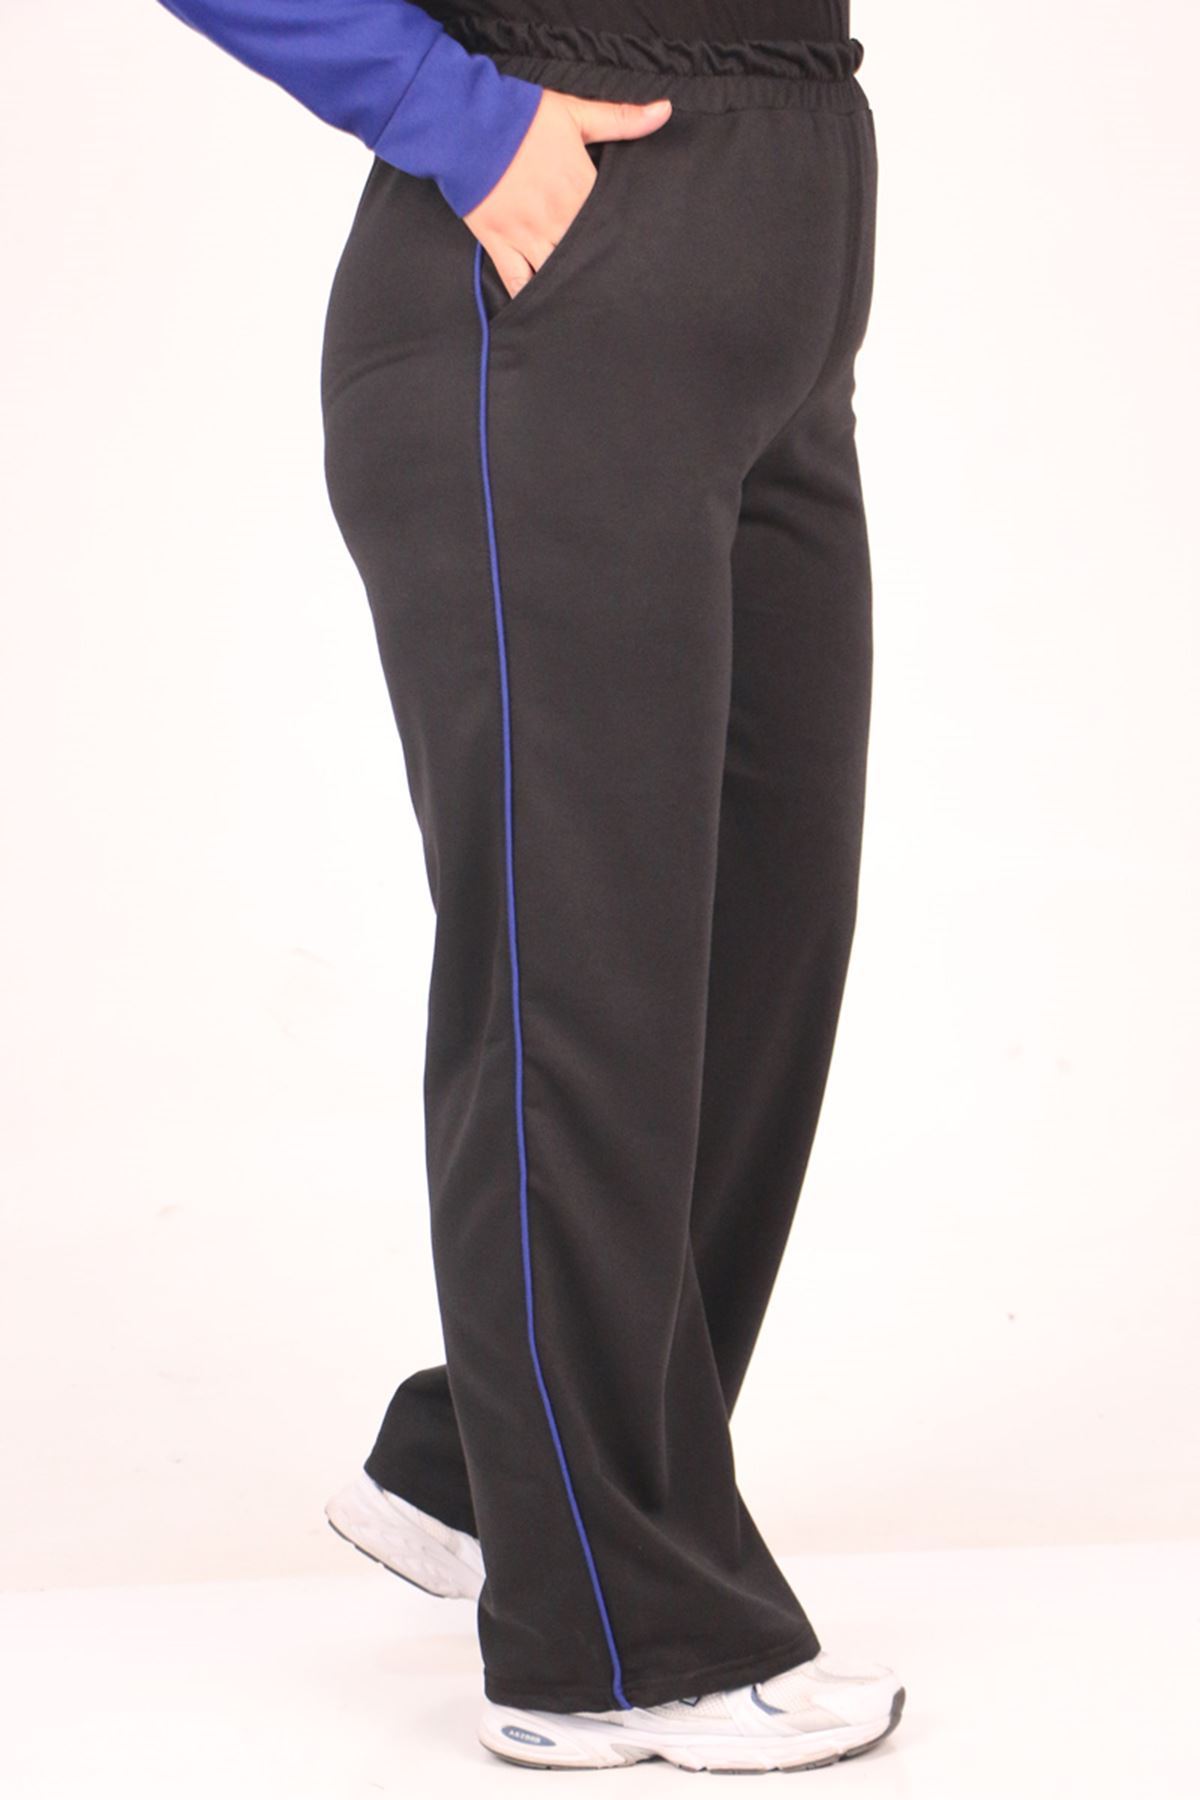 SHRNR19820 Büyük Beden Renk Kombinli İki İplik Pantolonlu Takım-Saks-Siyah